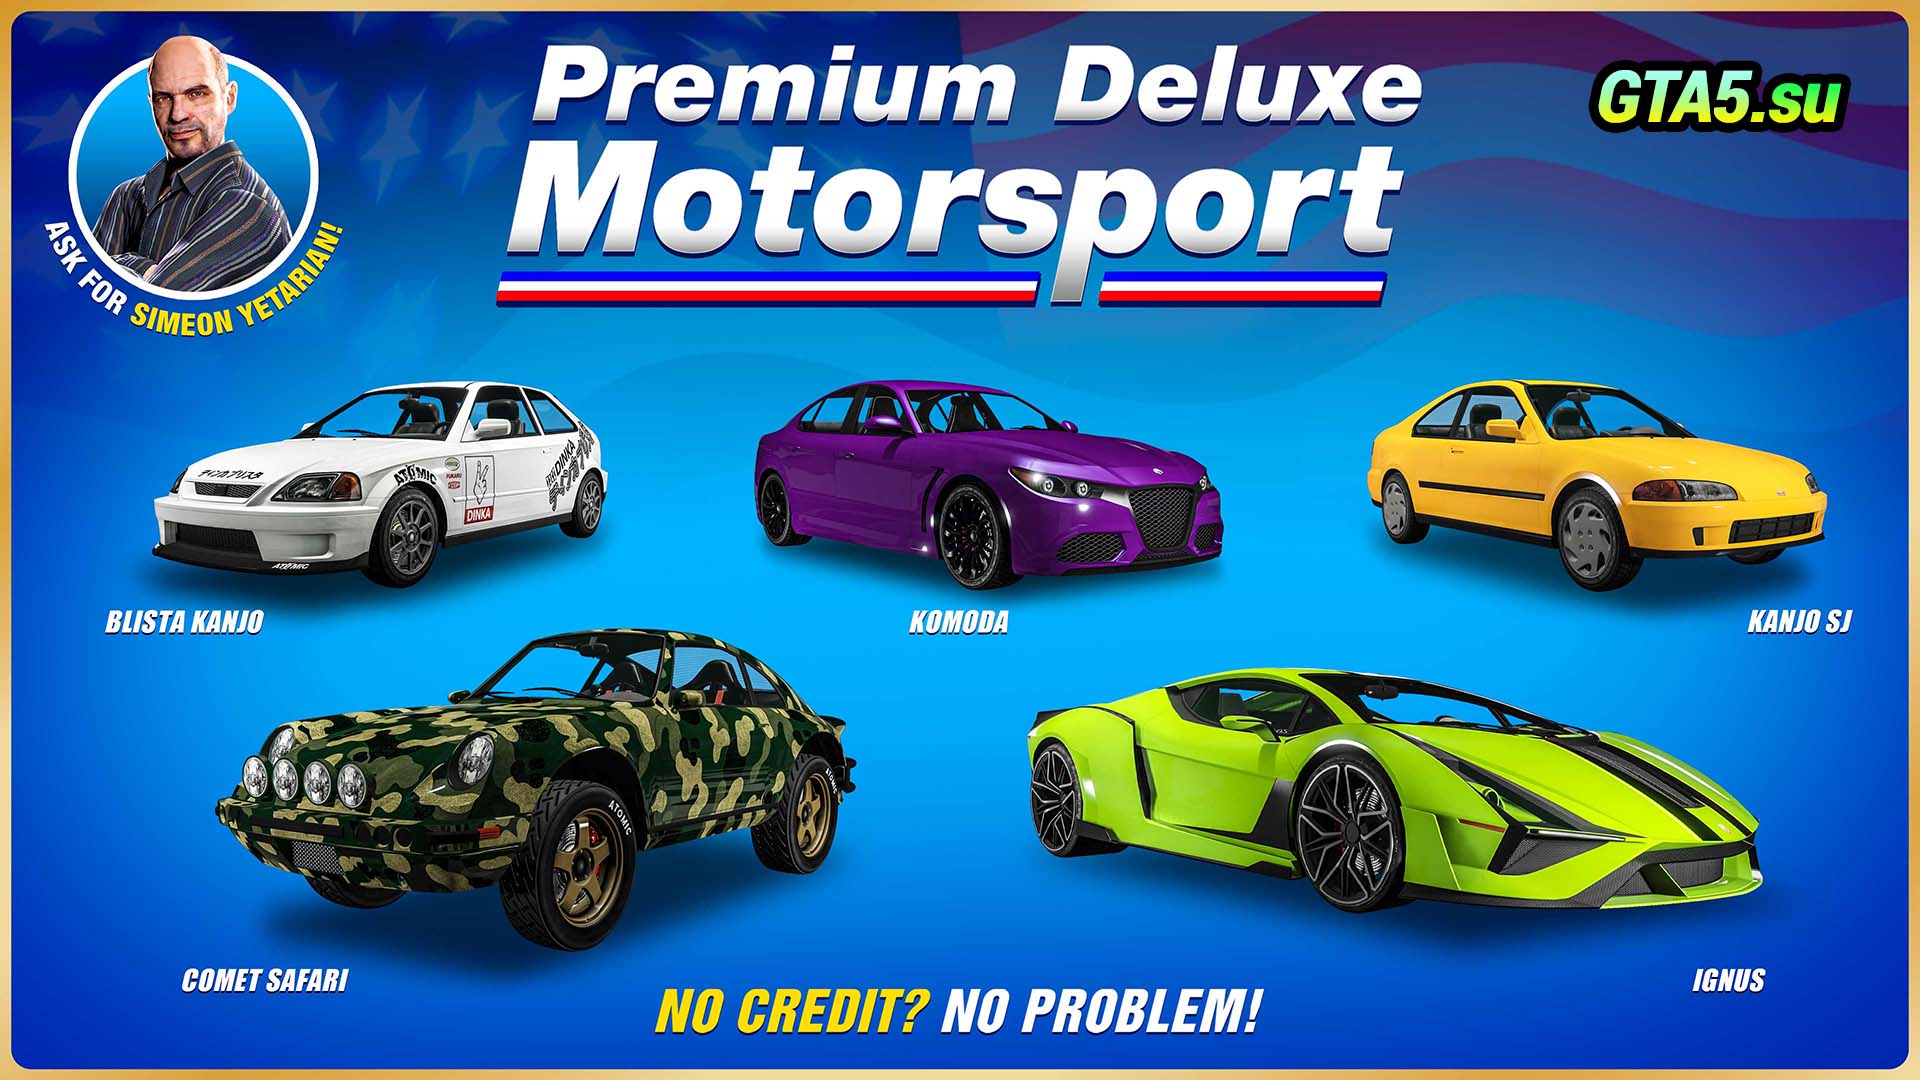 Premium deluxe motorsports gta 5 фото 39